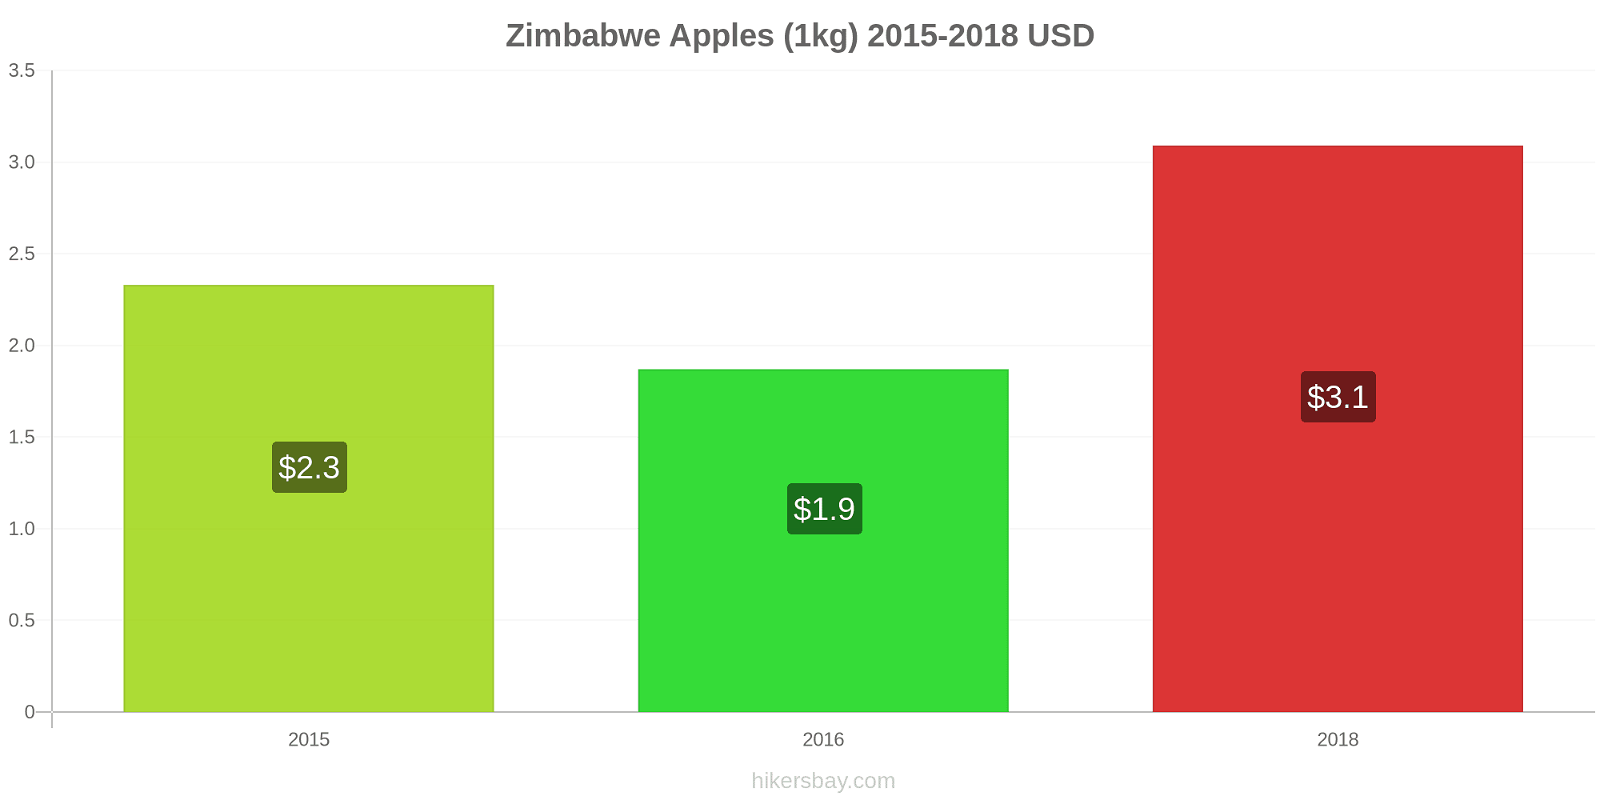 Zimbabwe price changes Apples (1kg) hikersbay.com